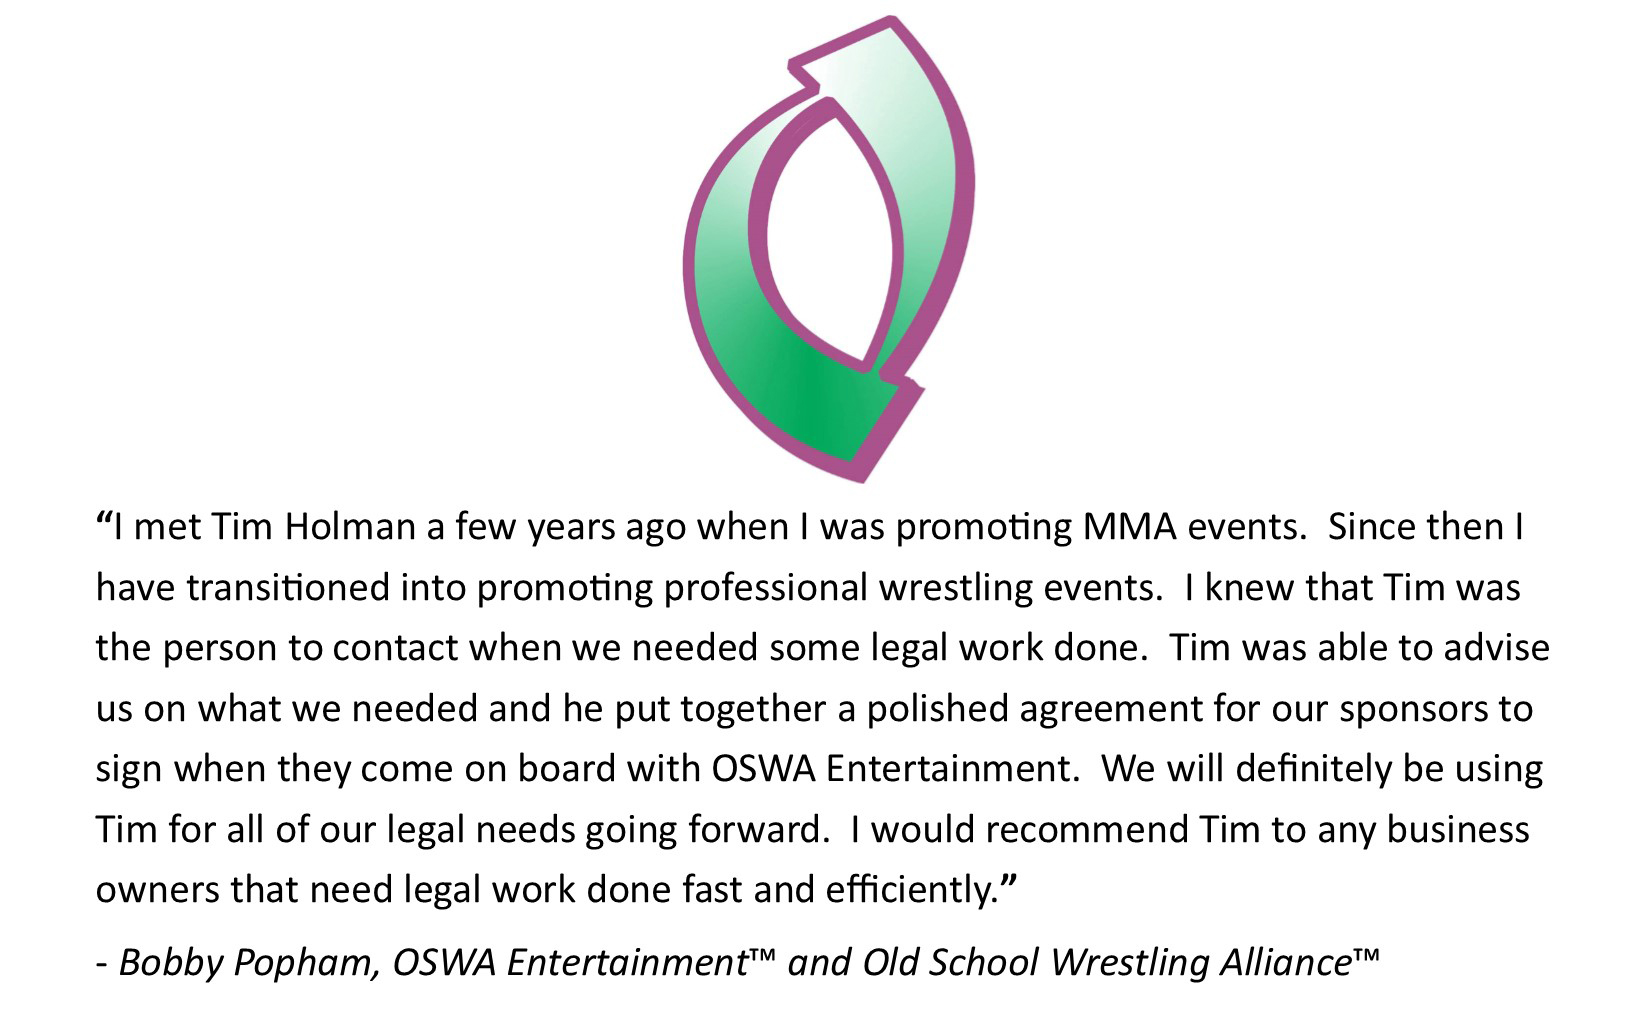 OSWA Entertainment